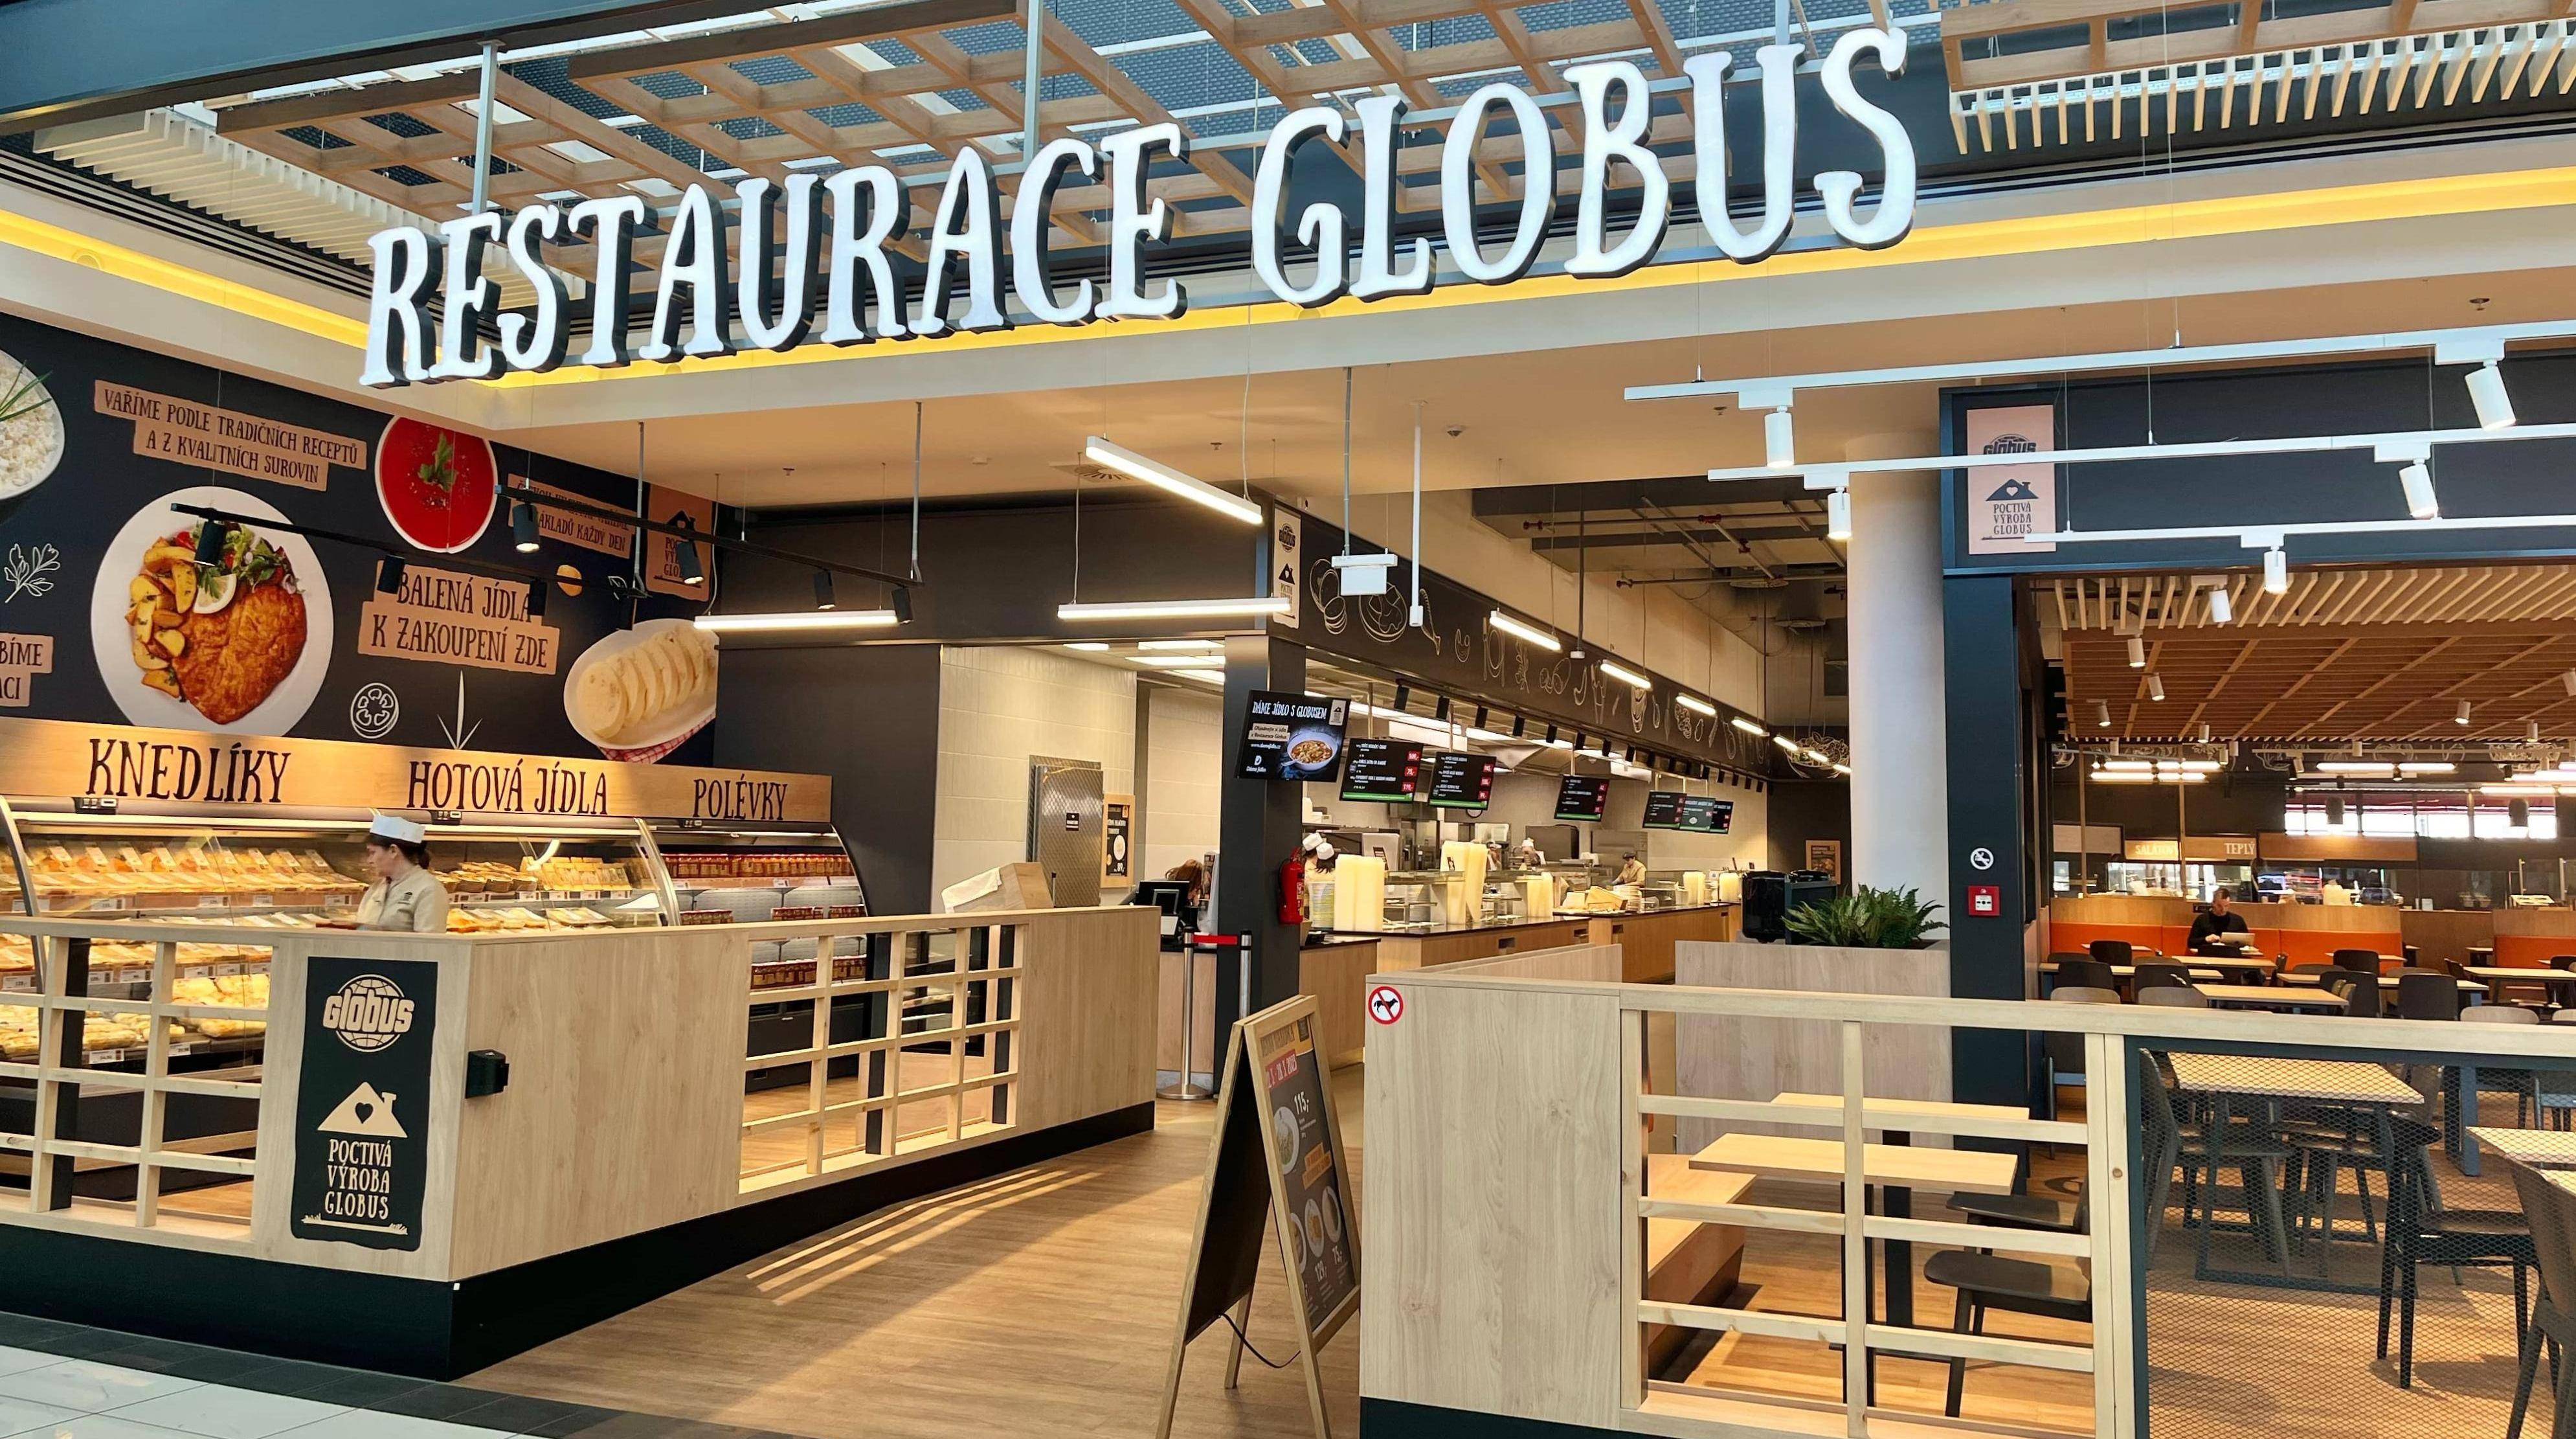 Globus restaurace | Obchodní centrum Štěrboholy